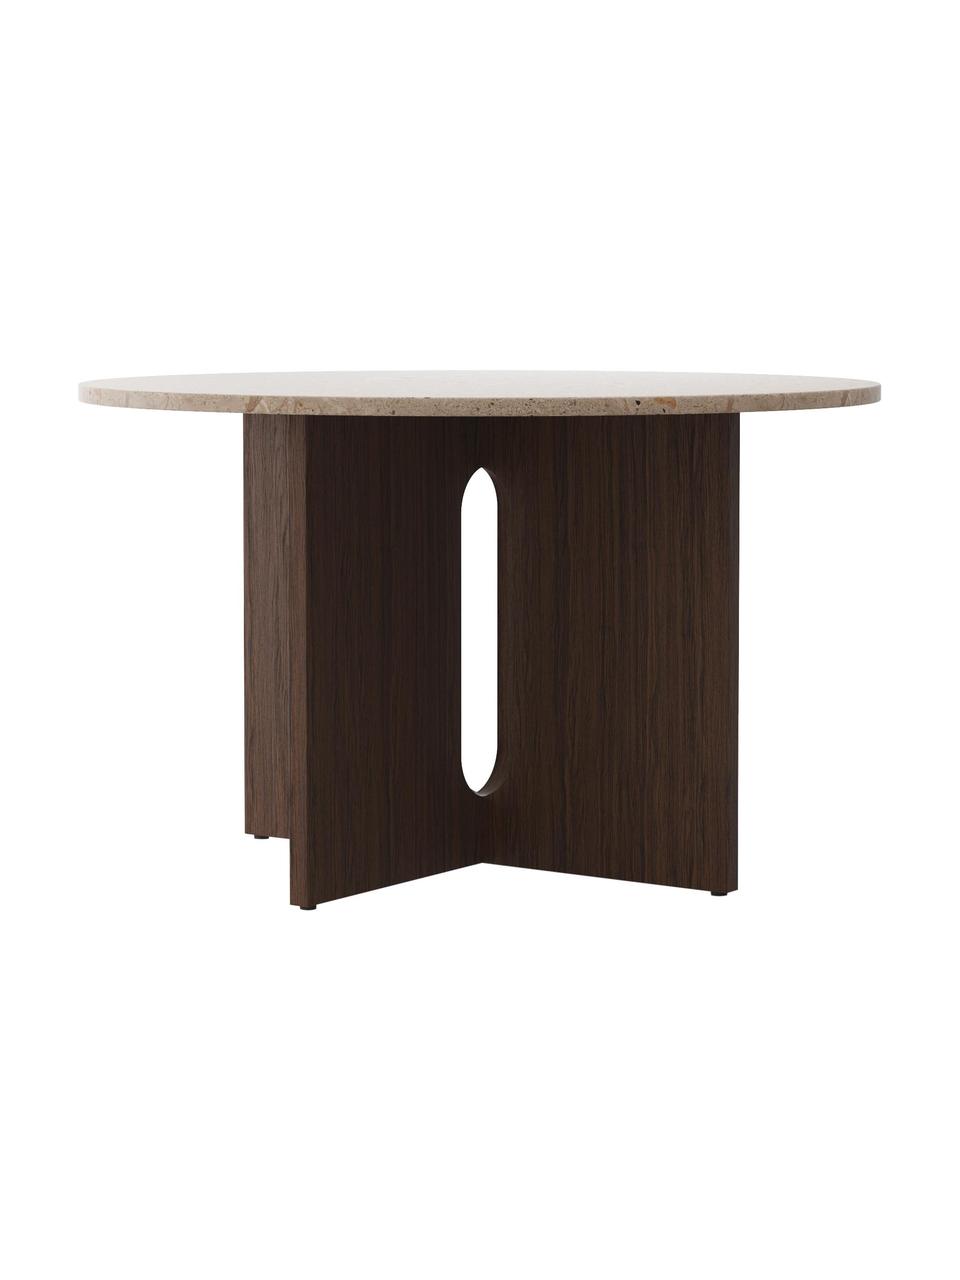 Kulatý jídelní stůl s deskou stolu z pískovce Androgyne, Ø 120 cm, Tmavé dřevo, pískovec, Ø 120 cm, V 73 cm